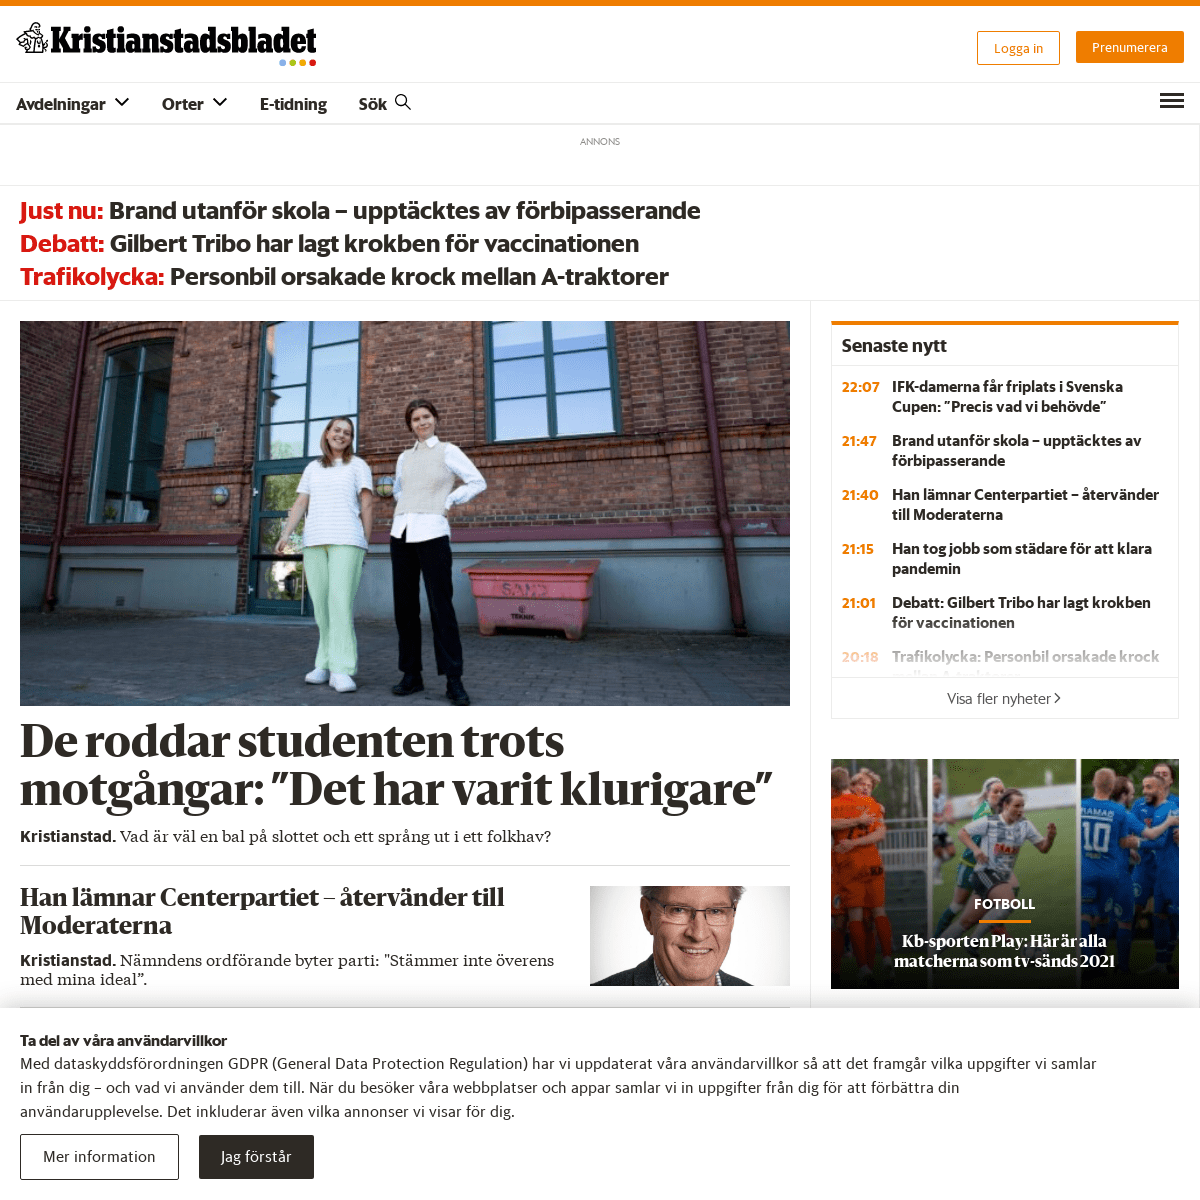 A complete backup of https://kristianstadsbladet.se